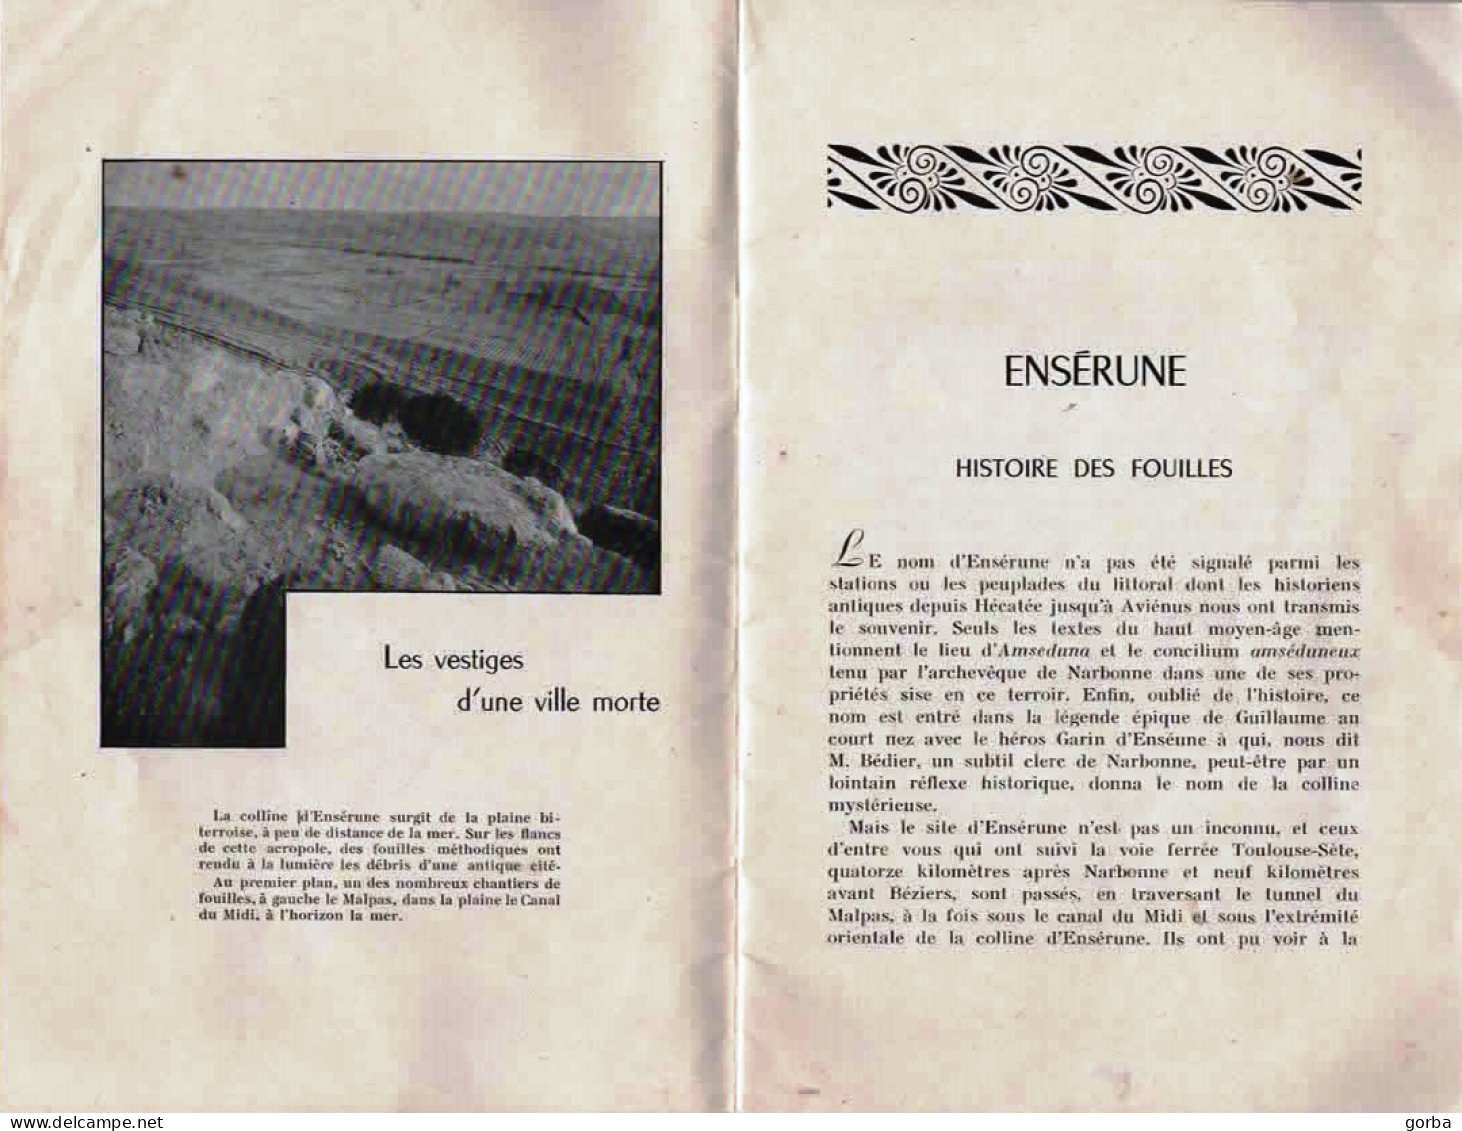 *Livre Souple - ENSERUNE - Histoire Des Fouilles Site "d'ENSERUNE" à NISSAN Les ENSERUNE (34) - Archäologie